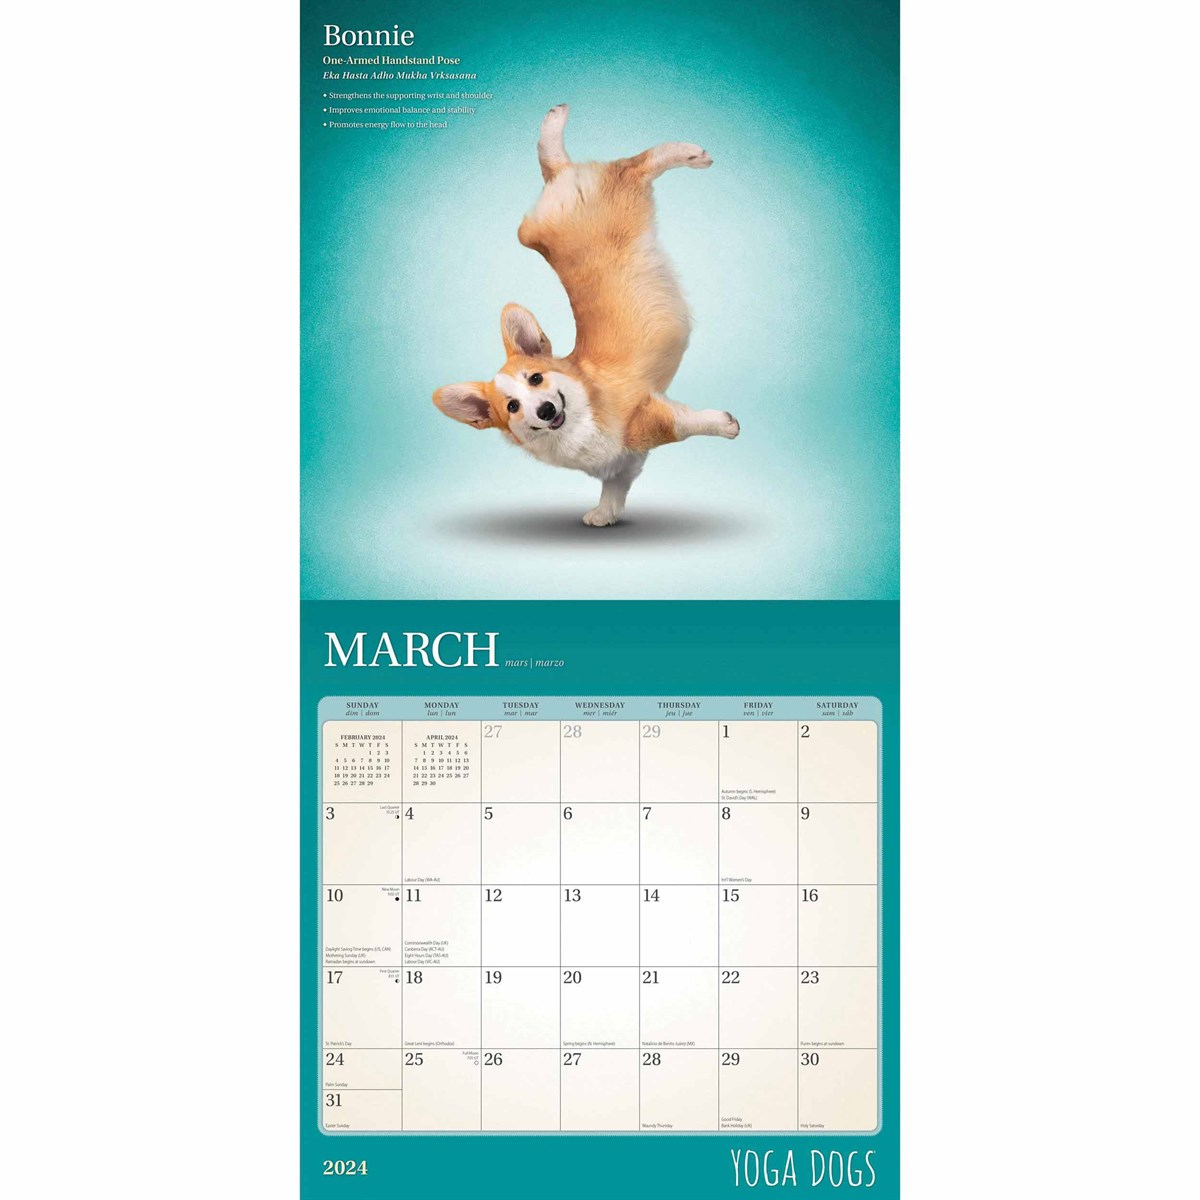 Yoga Dogs Calendar 2024